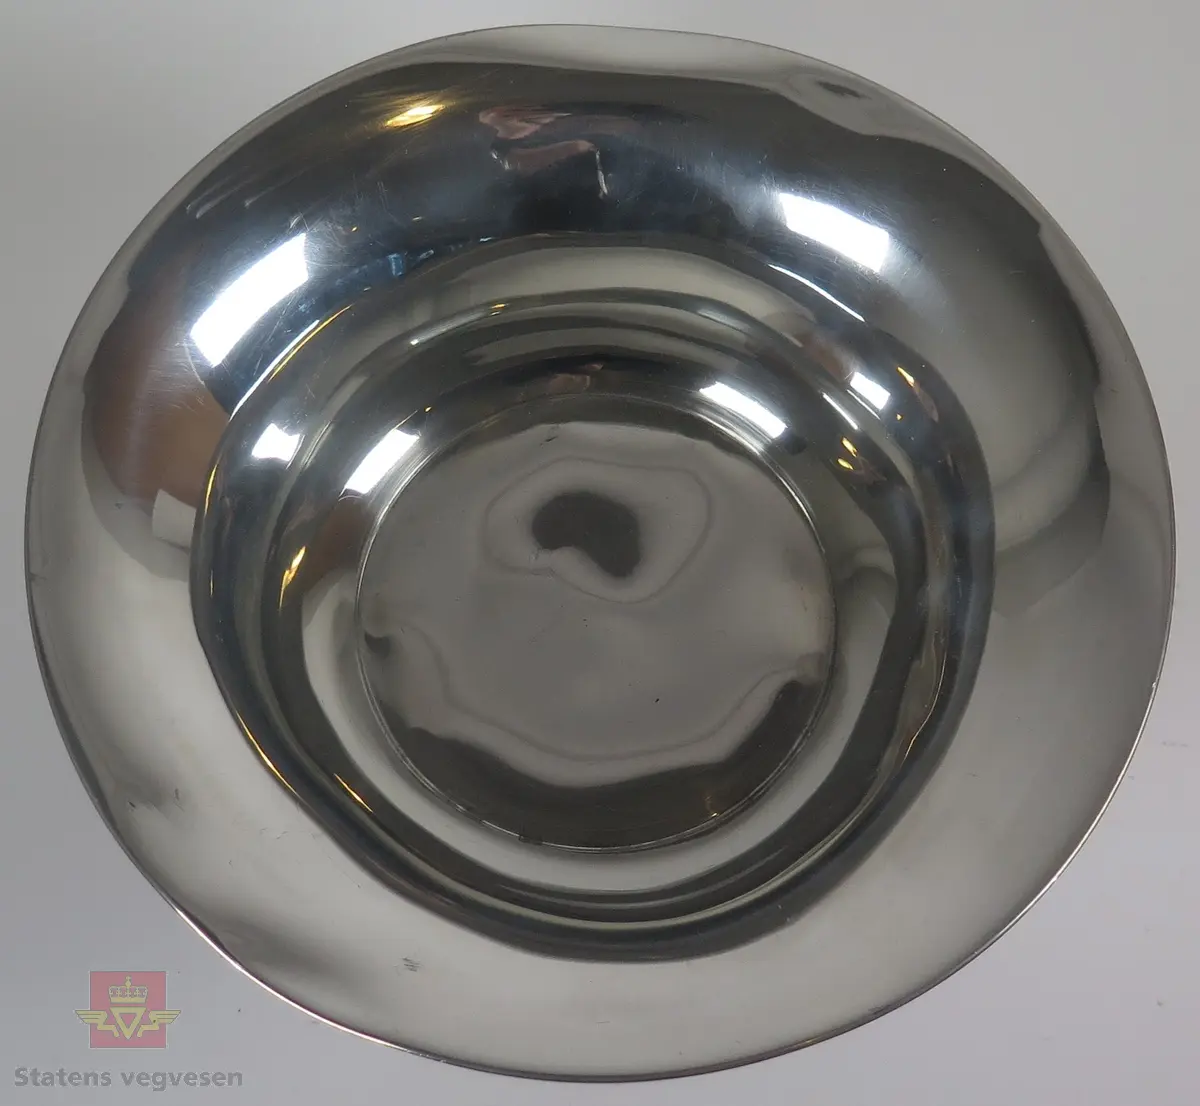 Pokal i sølv formet som en skål/bolle. Det er utformet tre ørner mellom bunnen og toppen av pokalen.